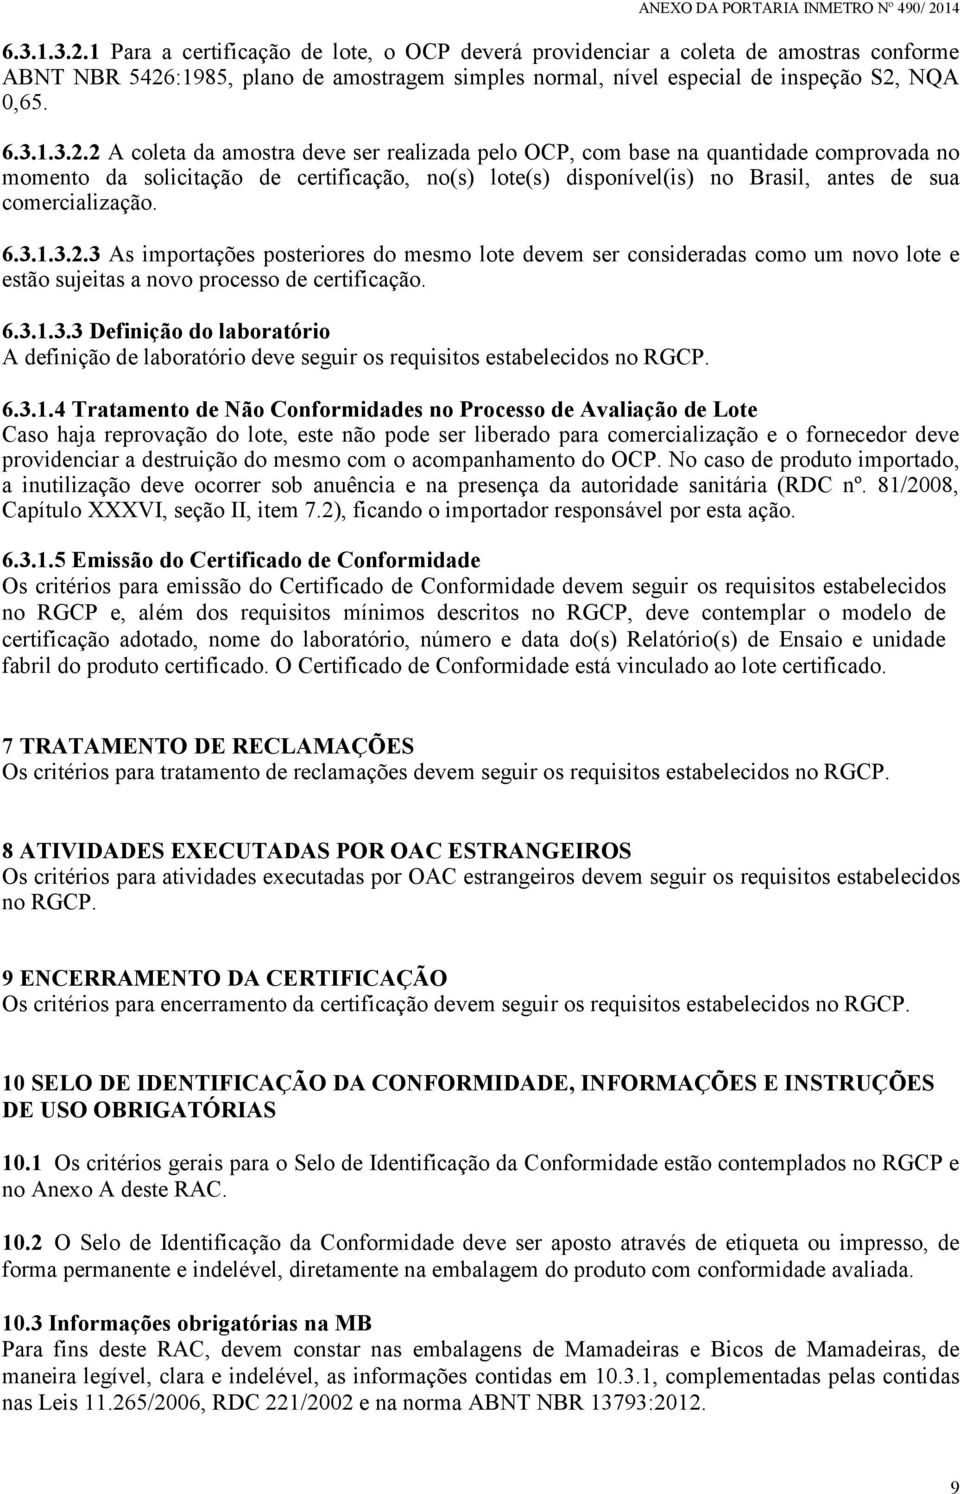 2 A coleta da amostra deve ser realizada pelo OCP, com base na quantidade comprovada no momento da solicitação de certificação, no(s) lote(s) disponível(is) no Brasil, antes de sua comercialização.